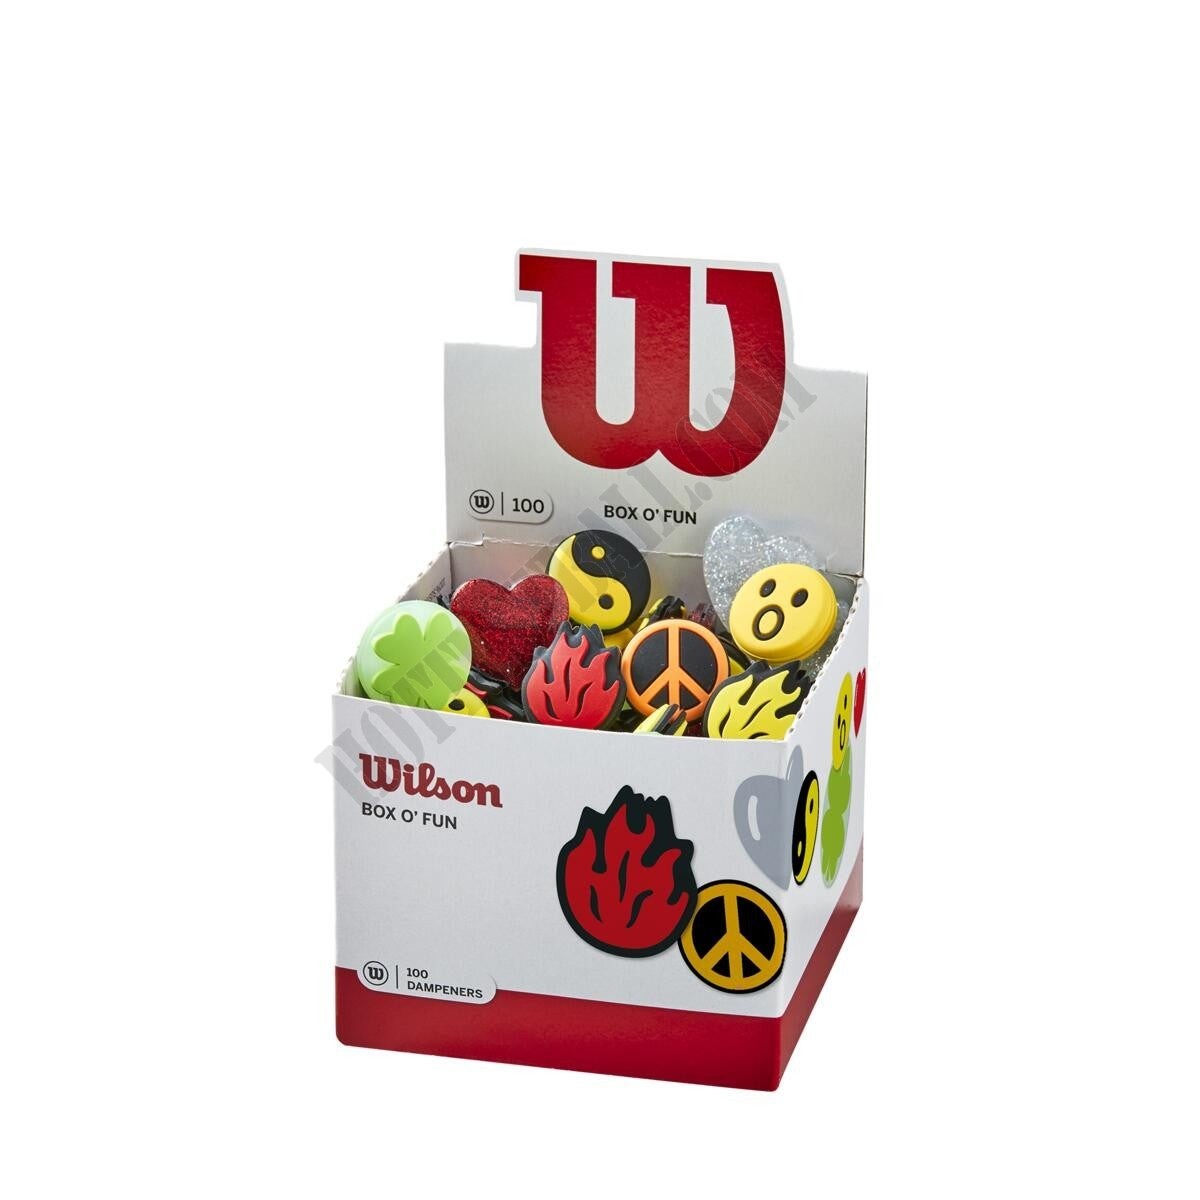 Box O' Fun Dampeners 100 Pack - Wilson Discount Store - Box O' Fun Dampeners 100 Pack - Wilson Discount Store